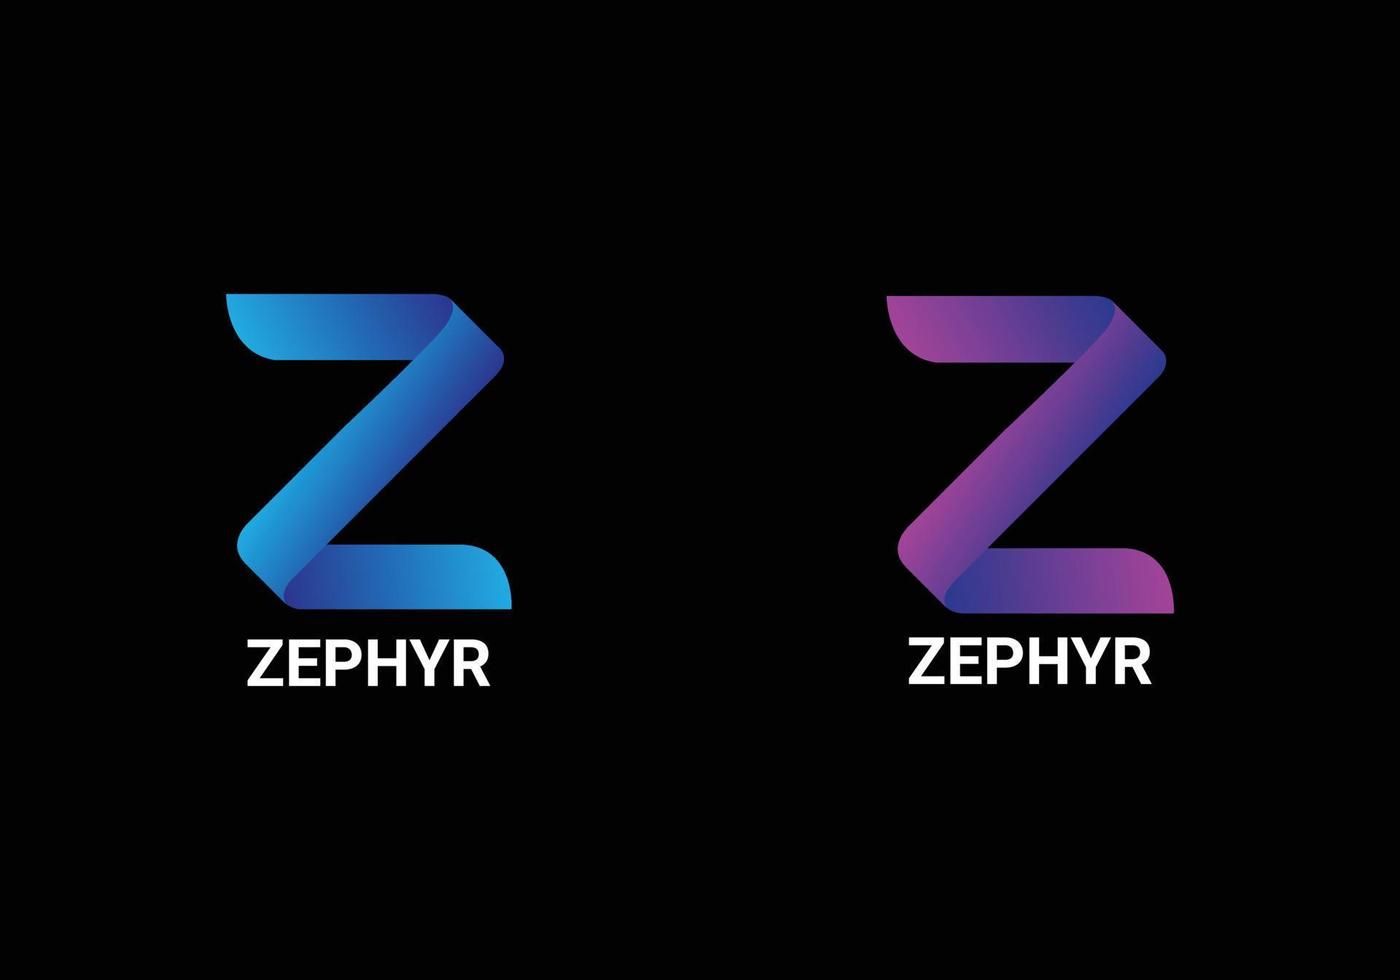 Zwphyr Abstract z letter modern lettermarks logo design vector